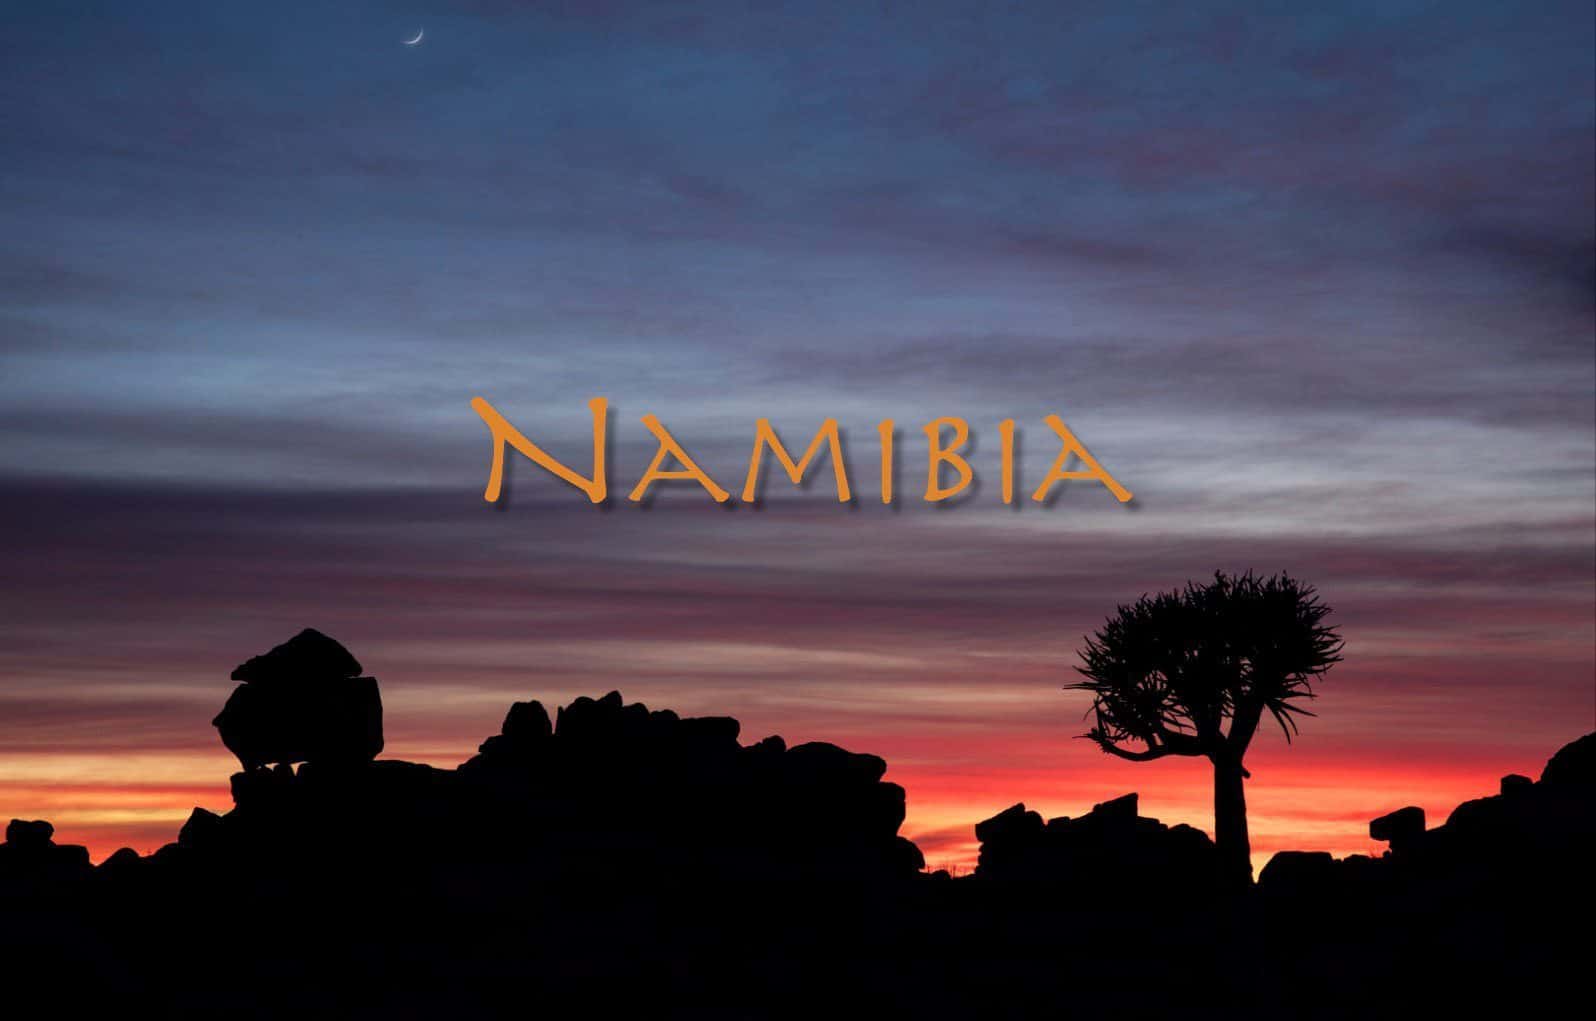 Namibia Slideshow 4K Video (Podcast 522)